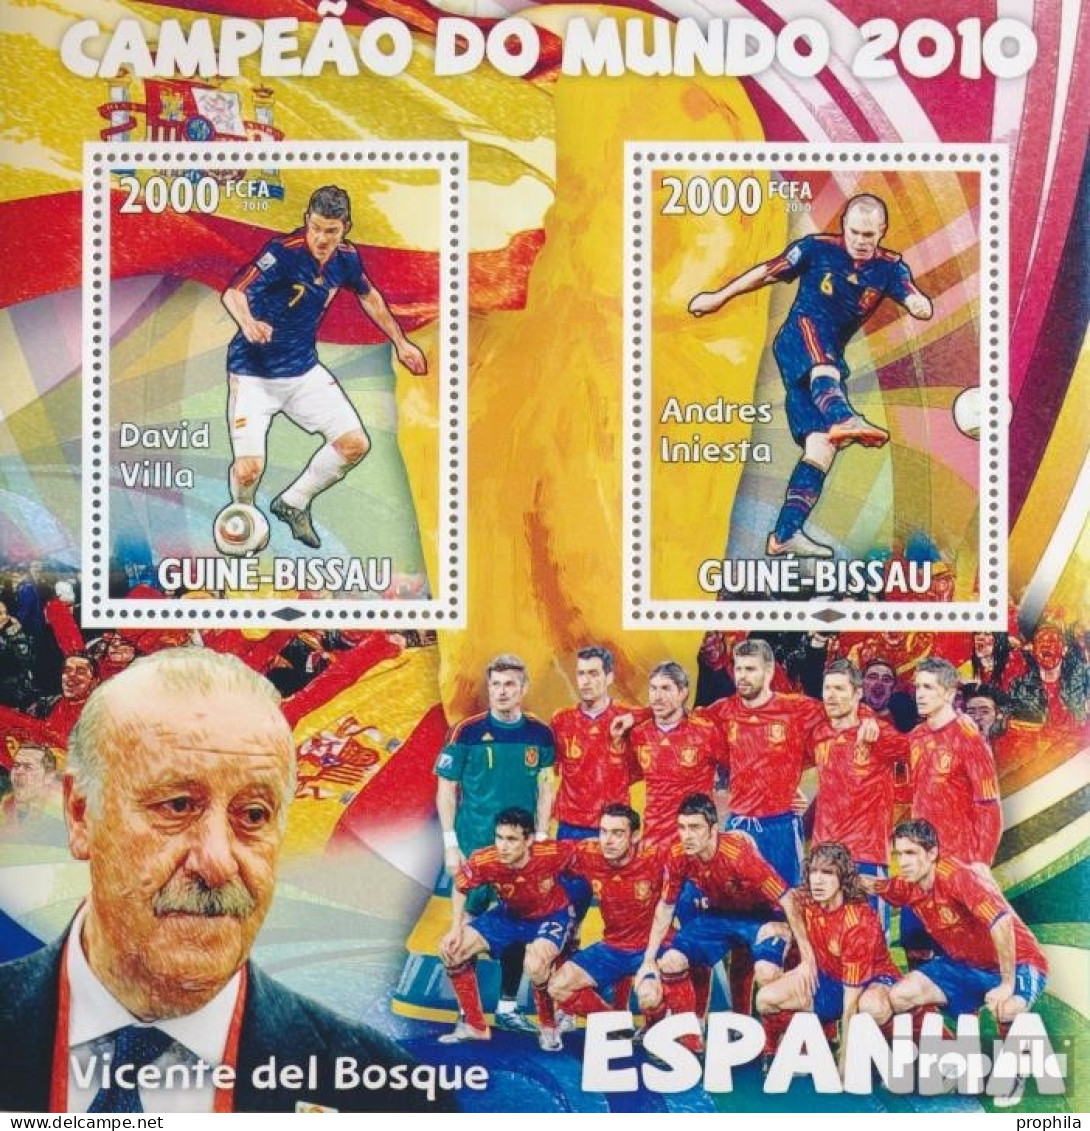 Guinea-Bissau Block 795 (kompl. Ausgabe) Postfrisch 2010 Berühmte Fußballspieler - Spanien - Guinea-Bissau